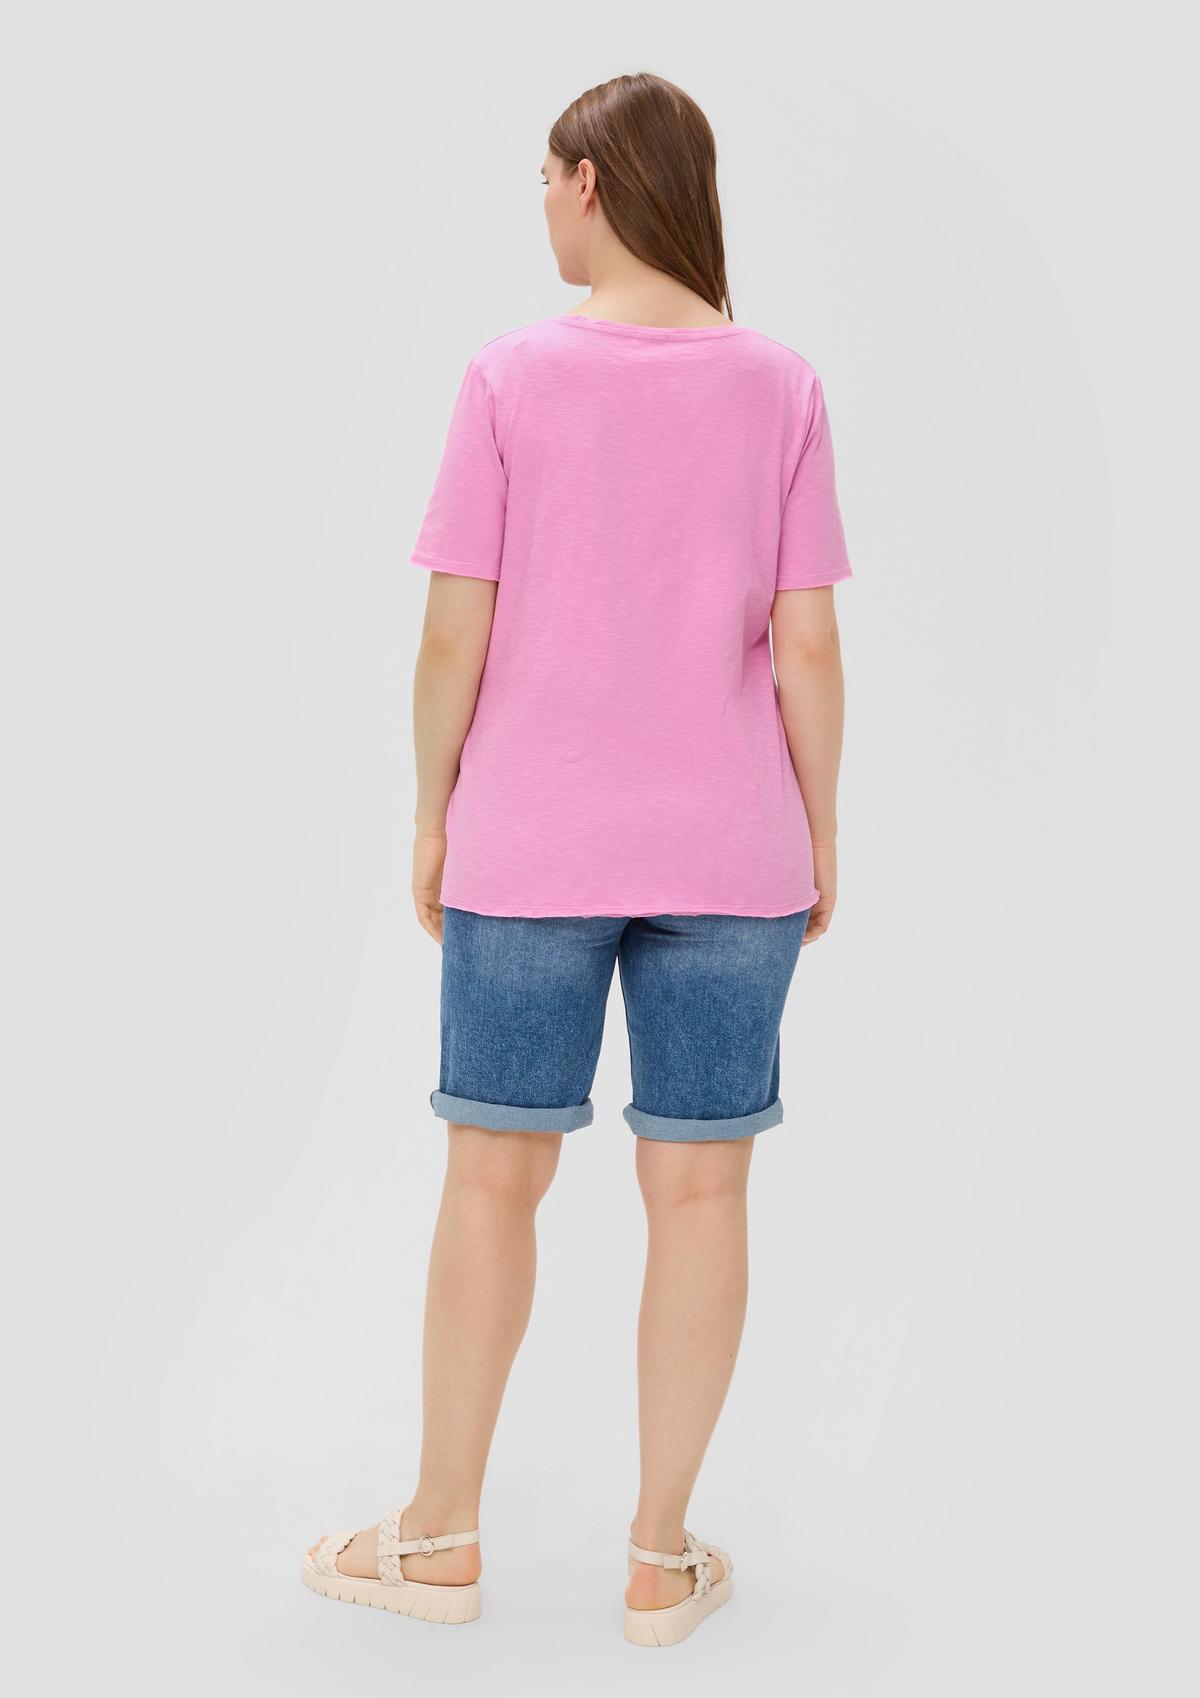 s.Oliver T-Shirt mit Garment Dye und abgerundetem V-Ausschnitt